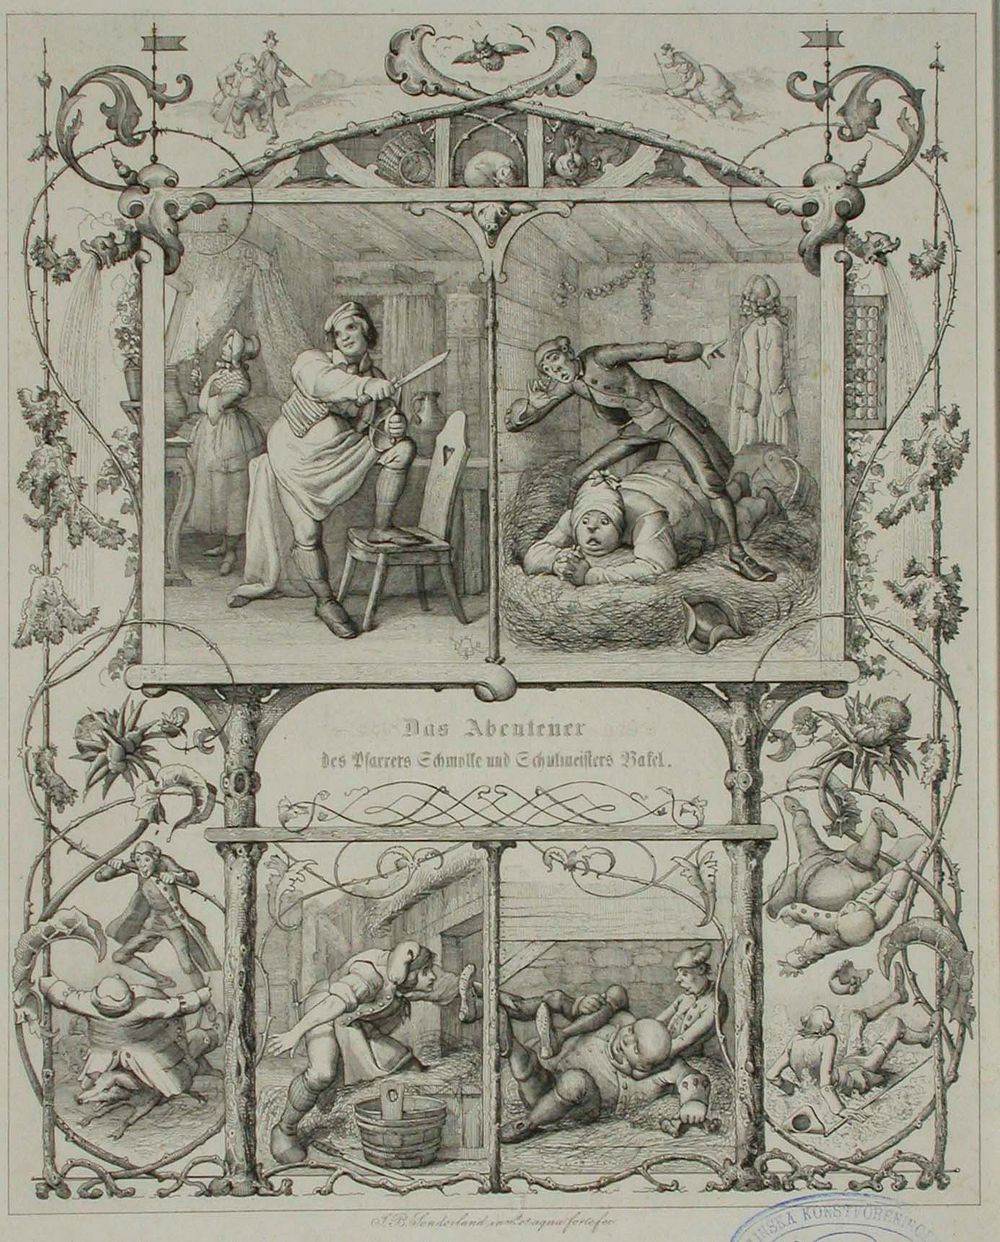 Runokuvitus, das abenteuer des pfarrers schmolke und schulmeisters bakel, 1838 - 1844